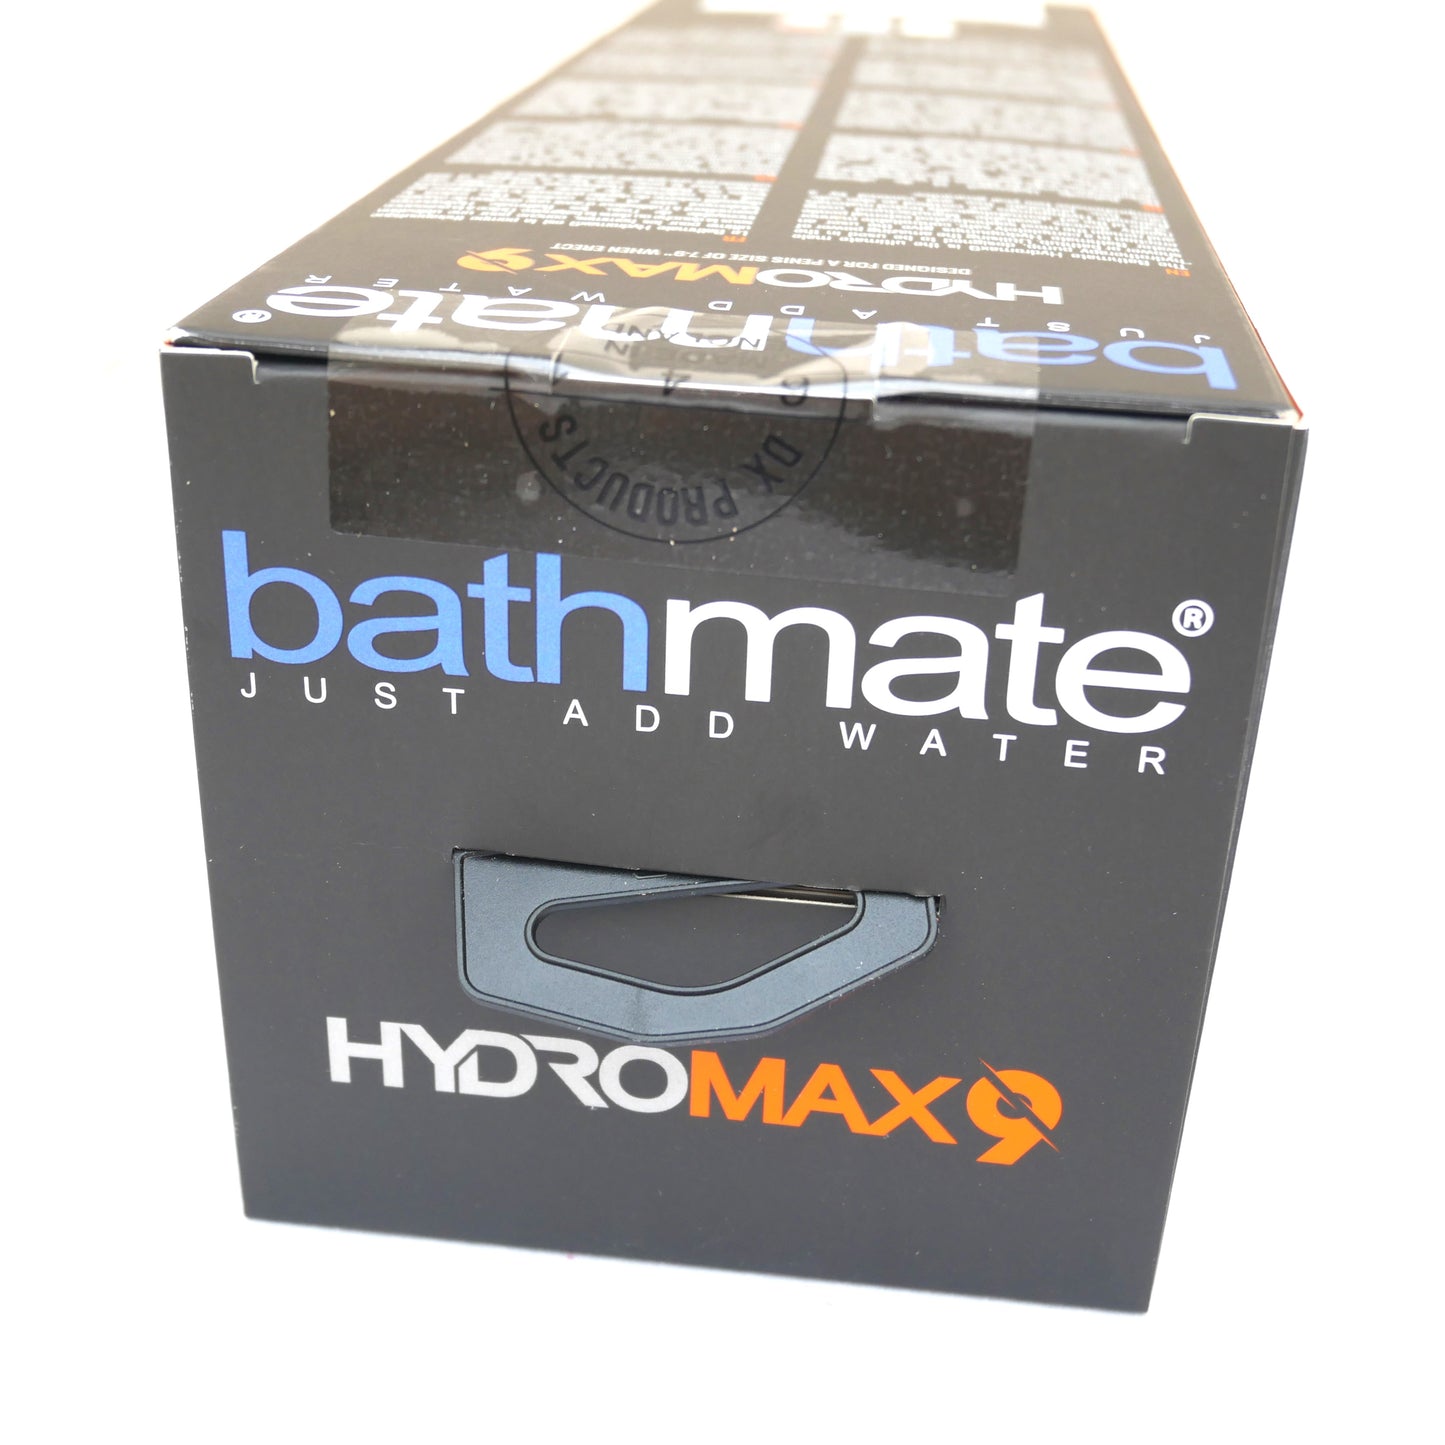 Bathmate Hydromax 9 transparent penis increase pump